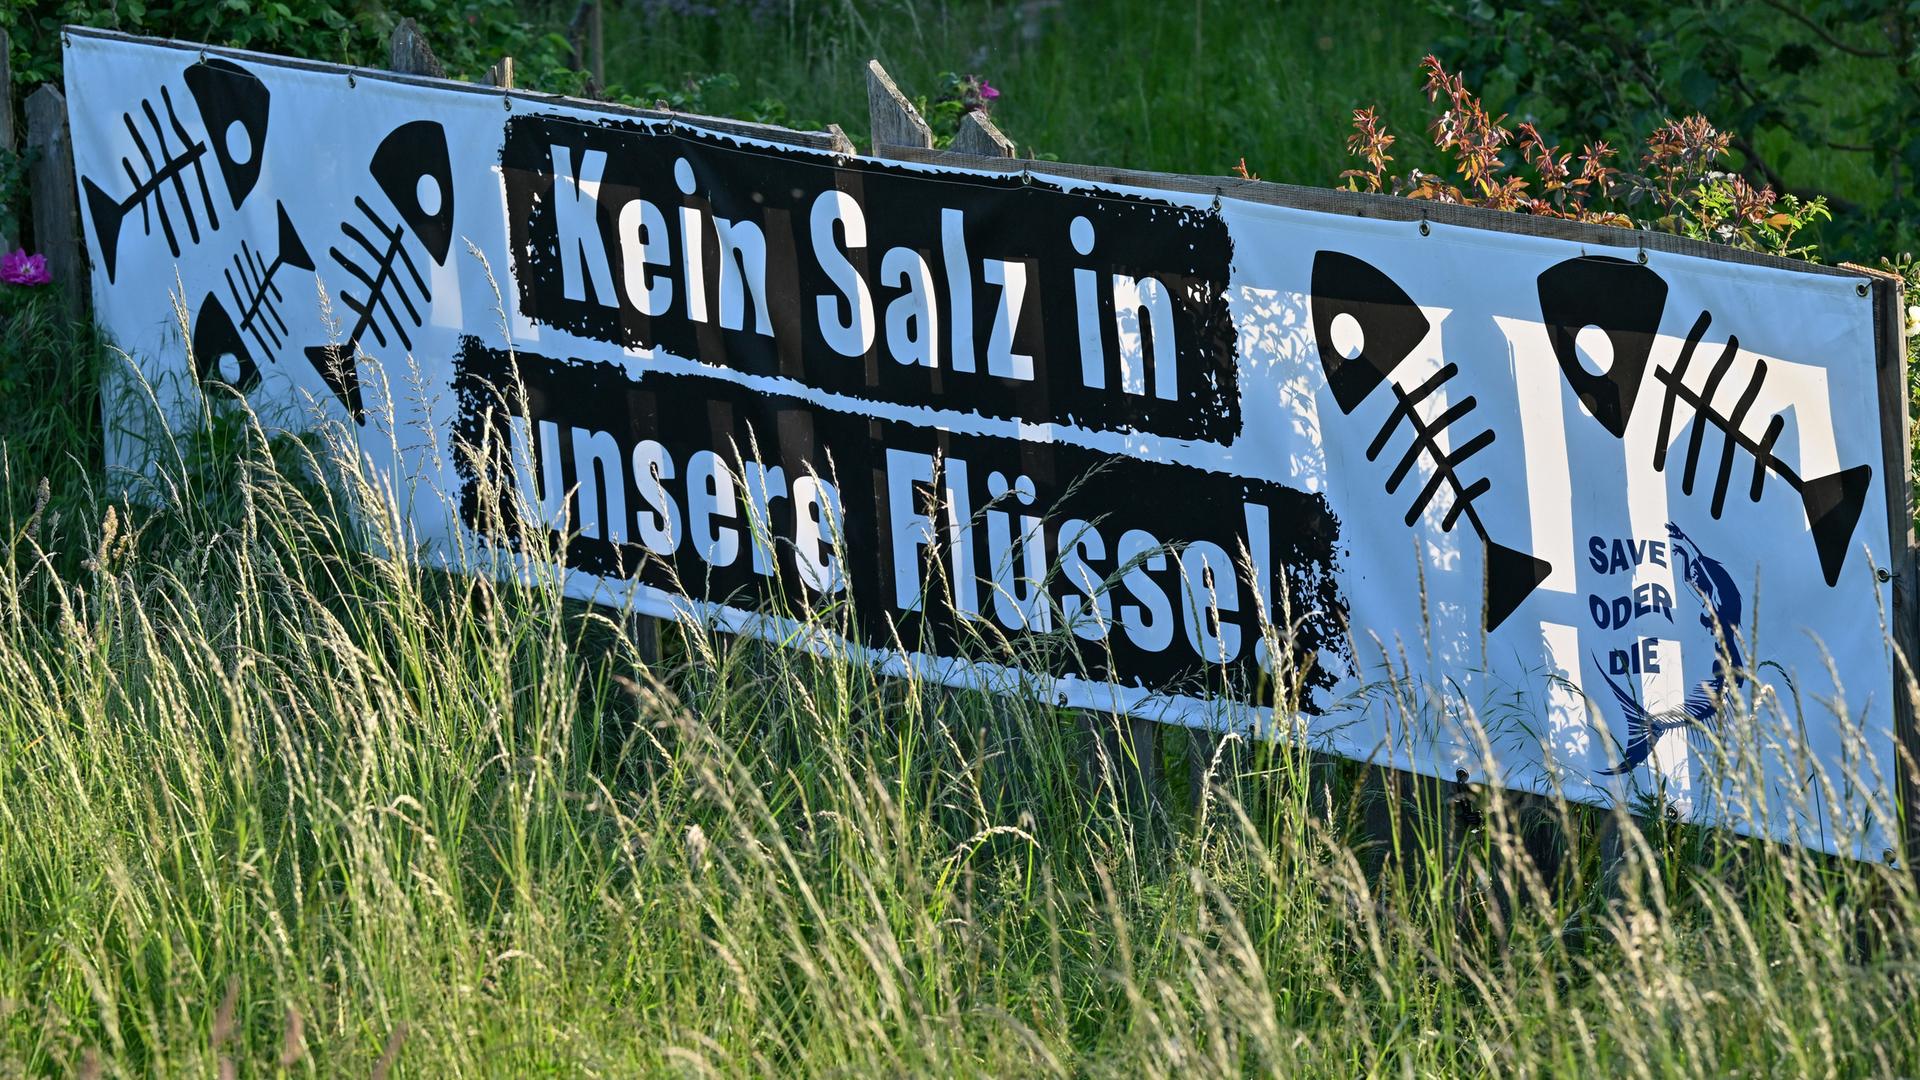 Nahe dem Hafen von Kienitz am deutsch-polnischen Grenzfluss Oder hängt ein Transparent mit der Aufschrift "Kein Salz in unsere Flüsse!"